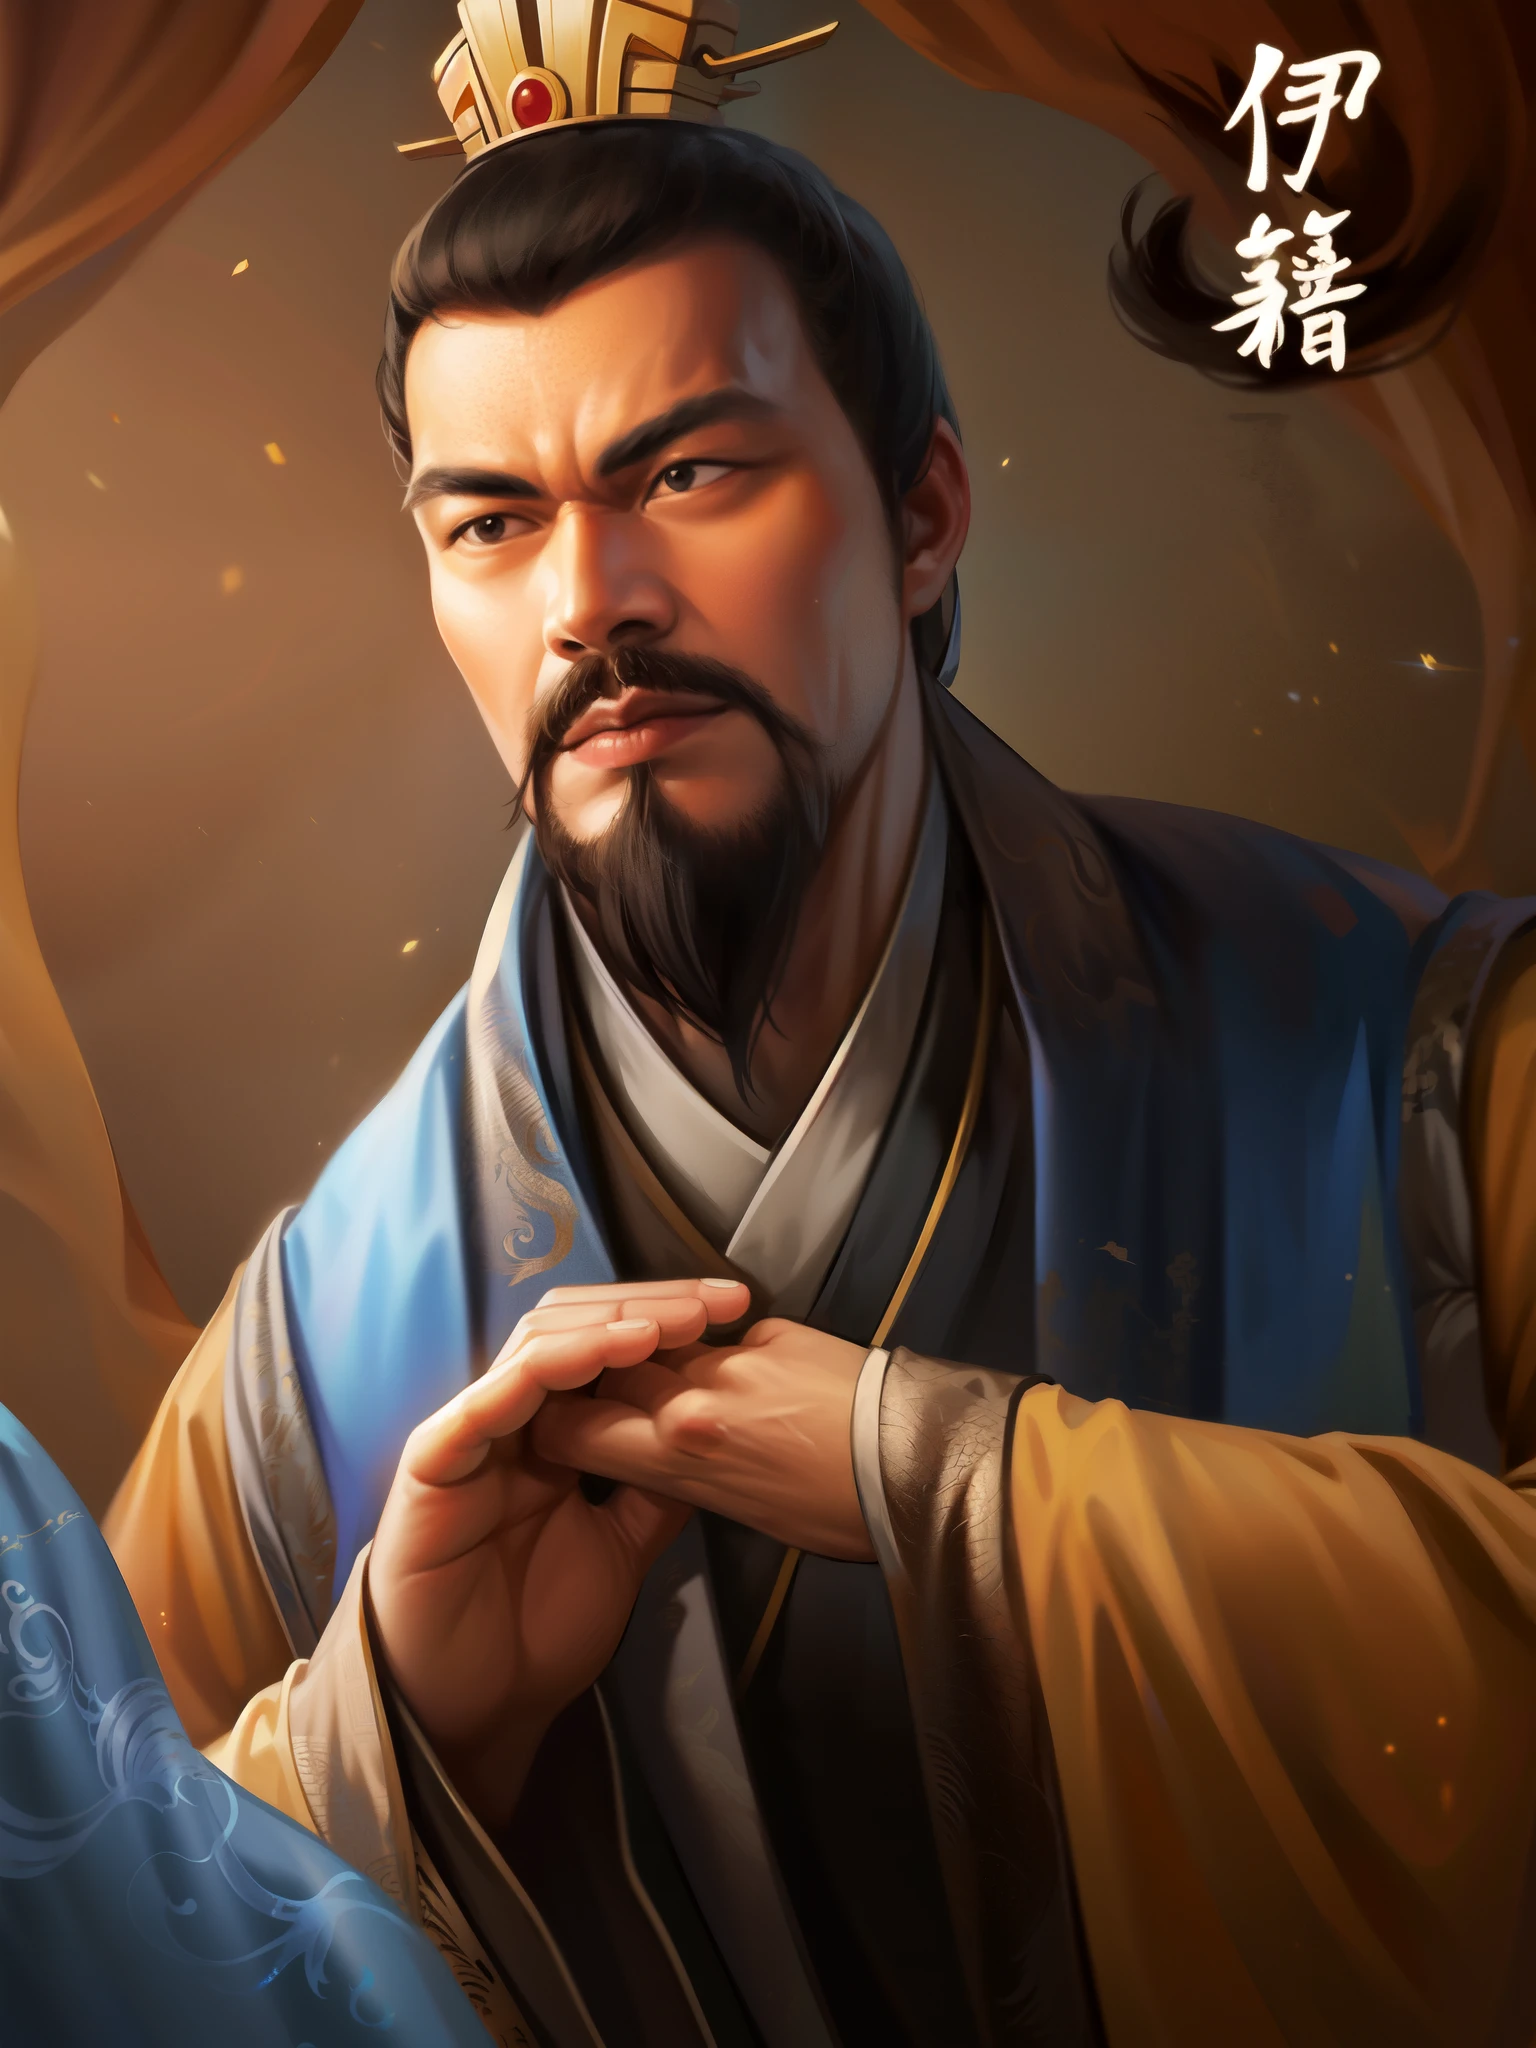 Arafad-Bild eines Mannes mit einer Krone auf dem Kopf, inspiriert von Wu Daozi, Inspiriert von Cao Zhibai, inspiriert von Zhao Mengfu, Inspiriert von Zhao Yuan, inspiriert von Wu Bin, feng shu, Bian Lian, liang xing, inspiriert von Zhu Derun, inspiriert von Dong Yuan, inspiriert von Wu Zuoren